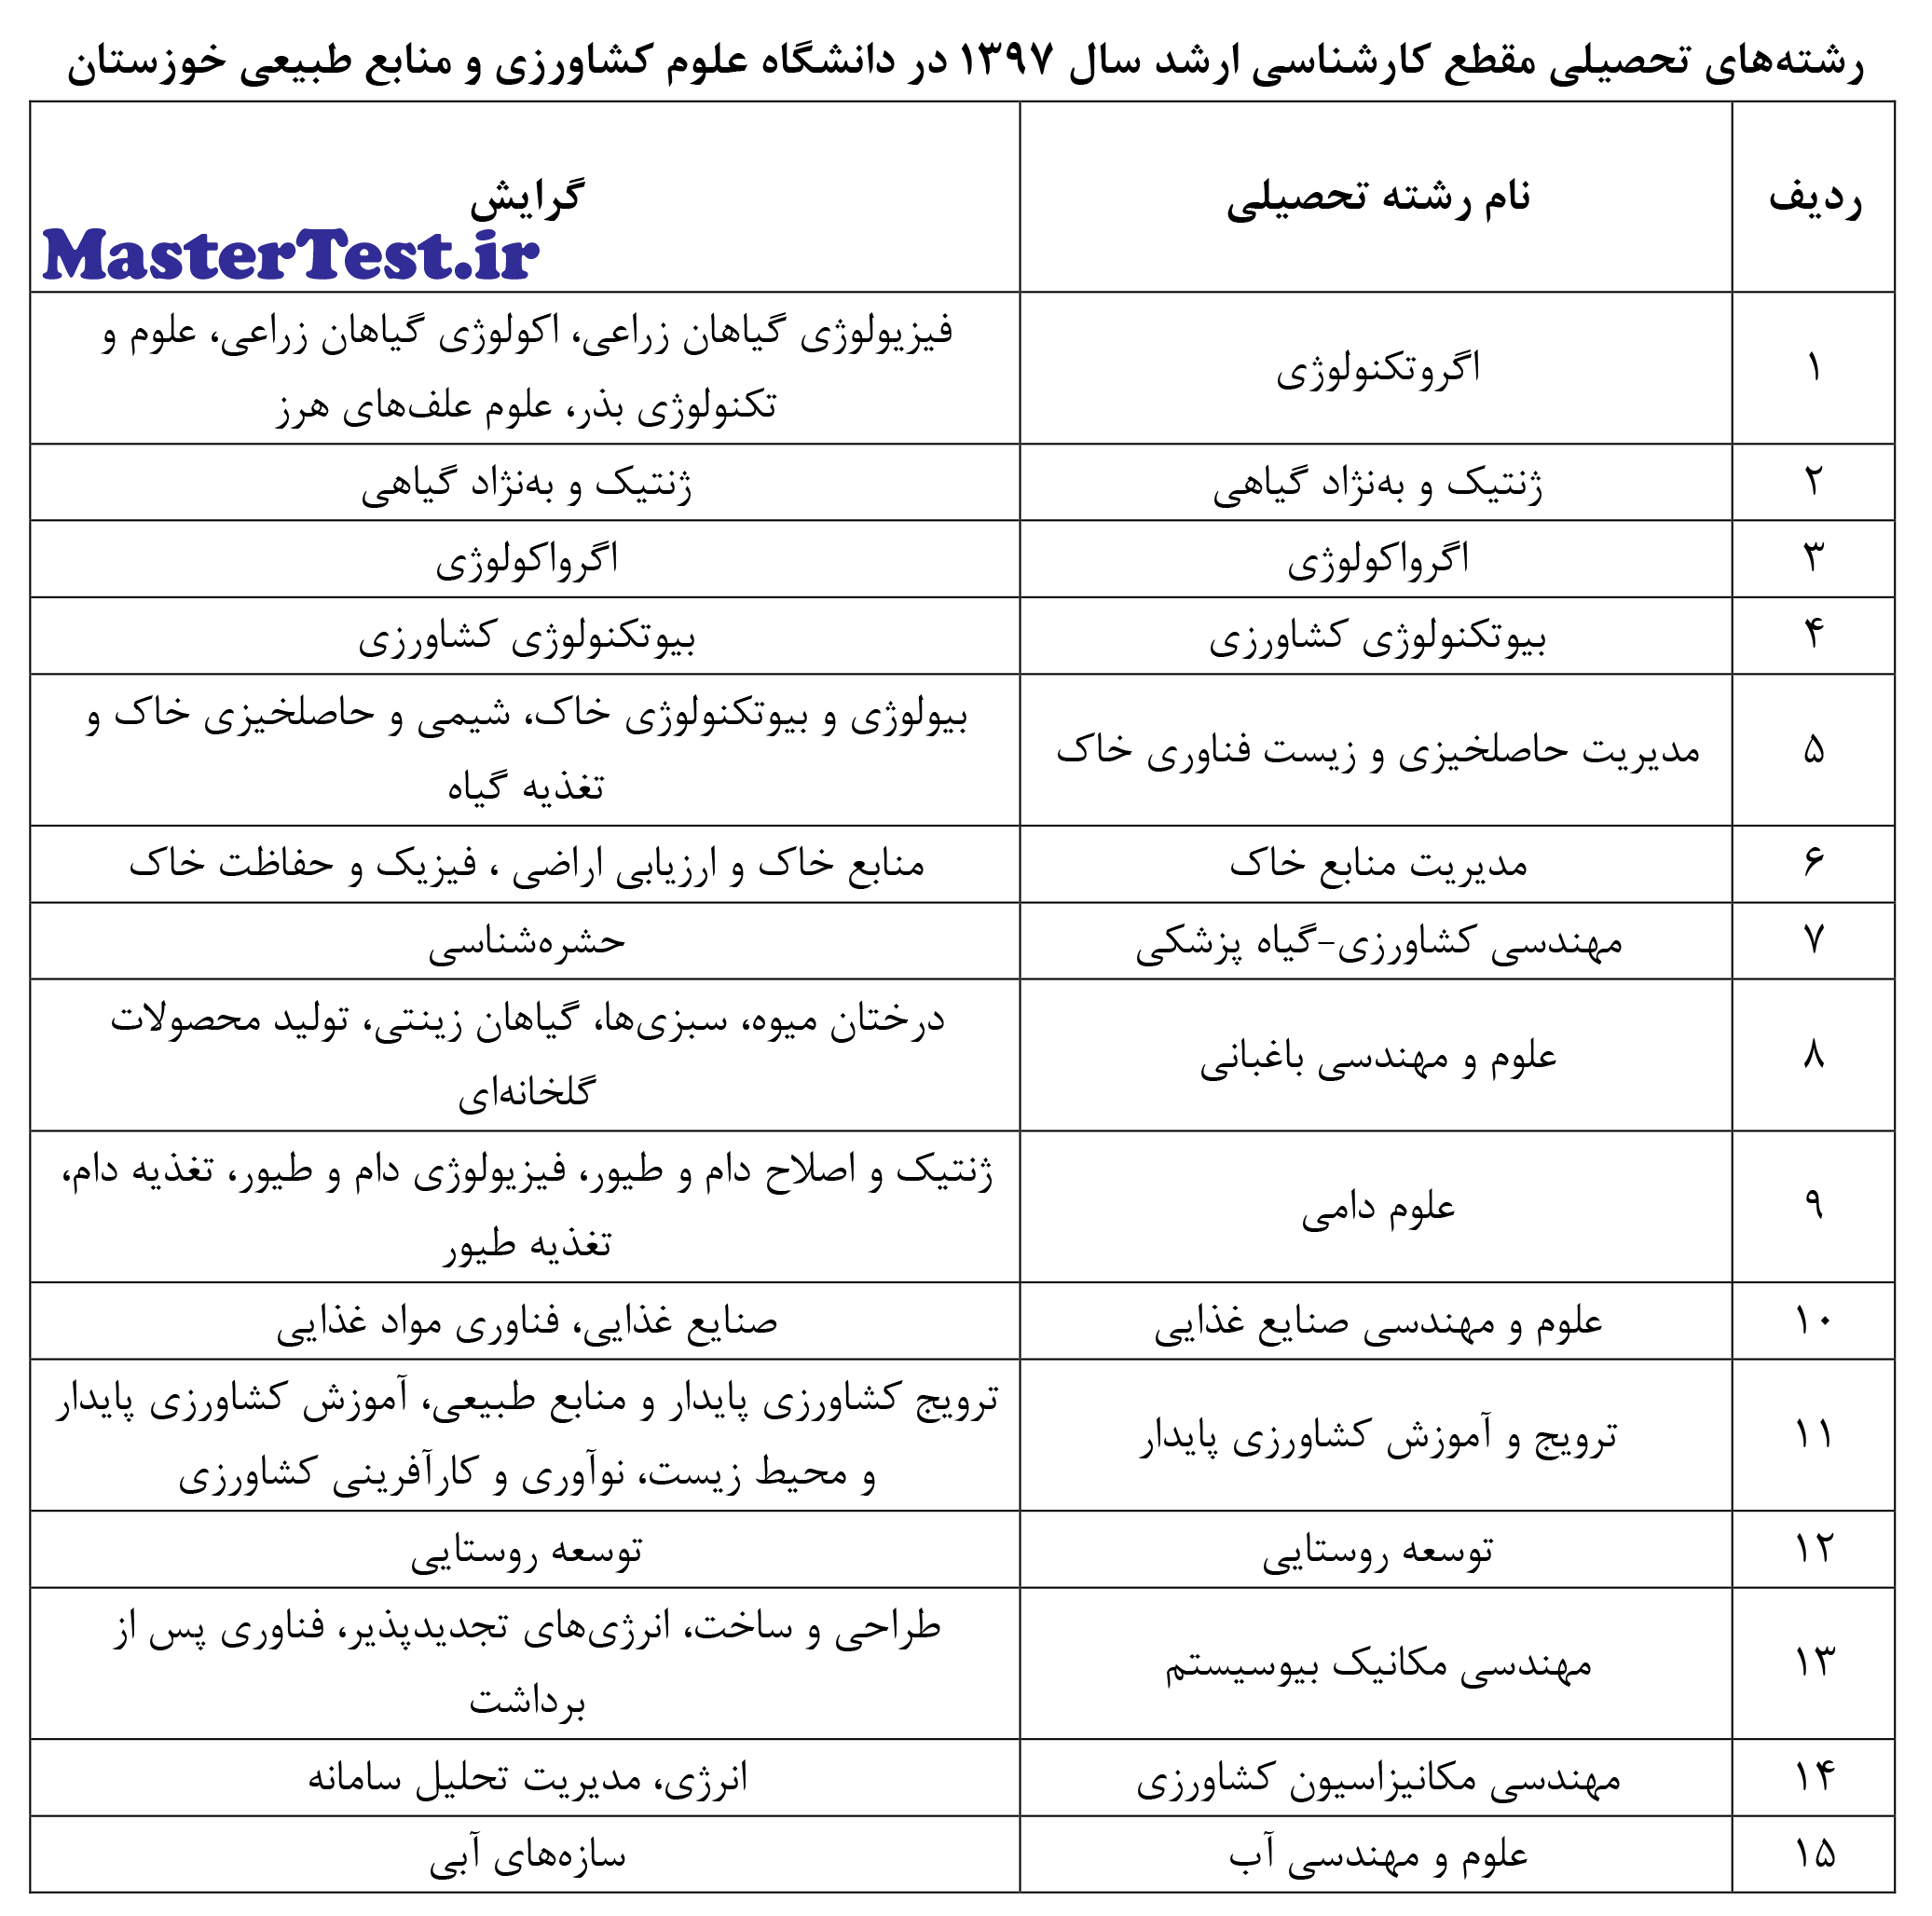 رشته های ارشد بدون ازمون 97 - 98 دانشگاه رامین خوزستان